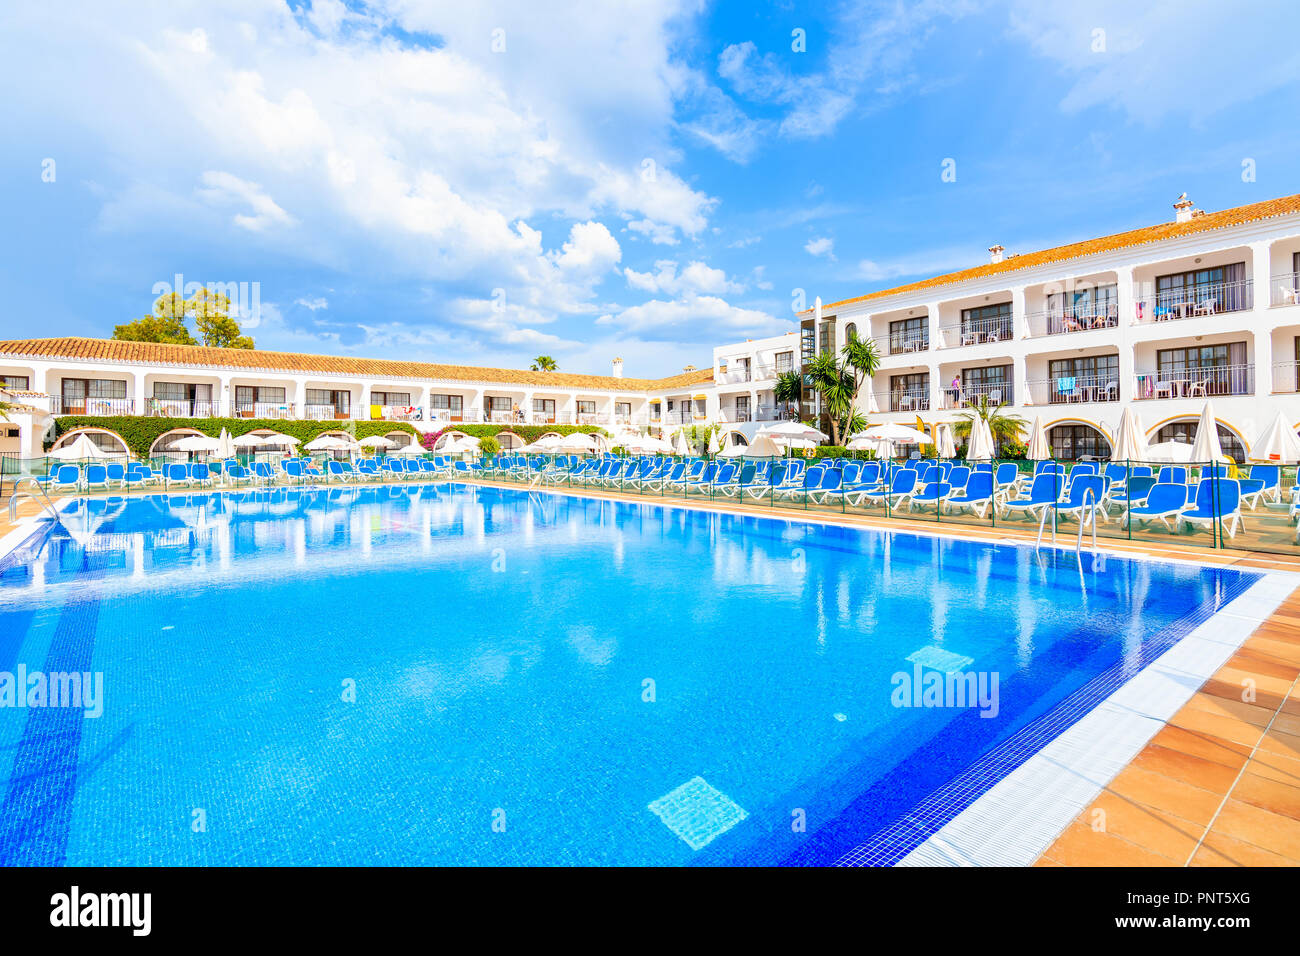 Stadt Marbella, Spanien - 8. Mai 2018: Swimming Pool von einem Hotel im Stil eines andalusischen Dorfes gebaut an der Costa del Sol in der Nähe von Malaga Stadt. Spanien ist Stockfoto